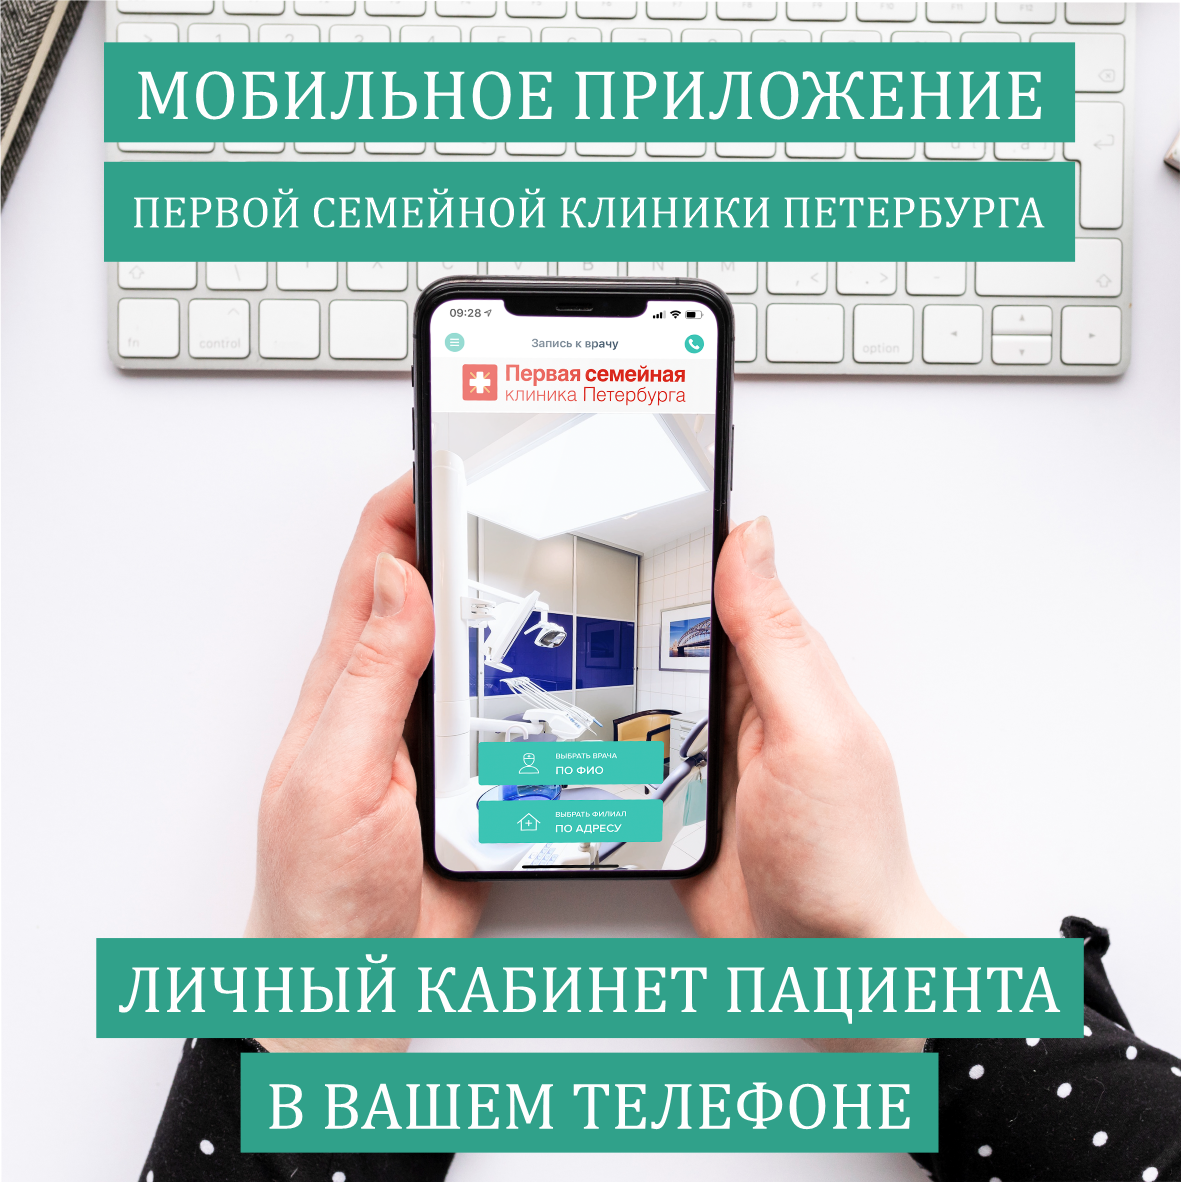 Мобильное приложение "Первой семейной клиники Петербурга"